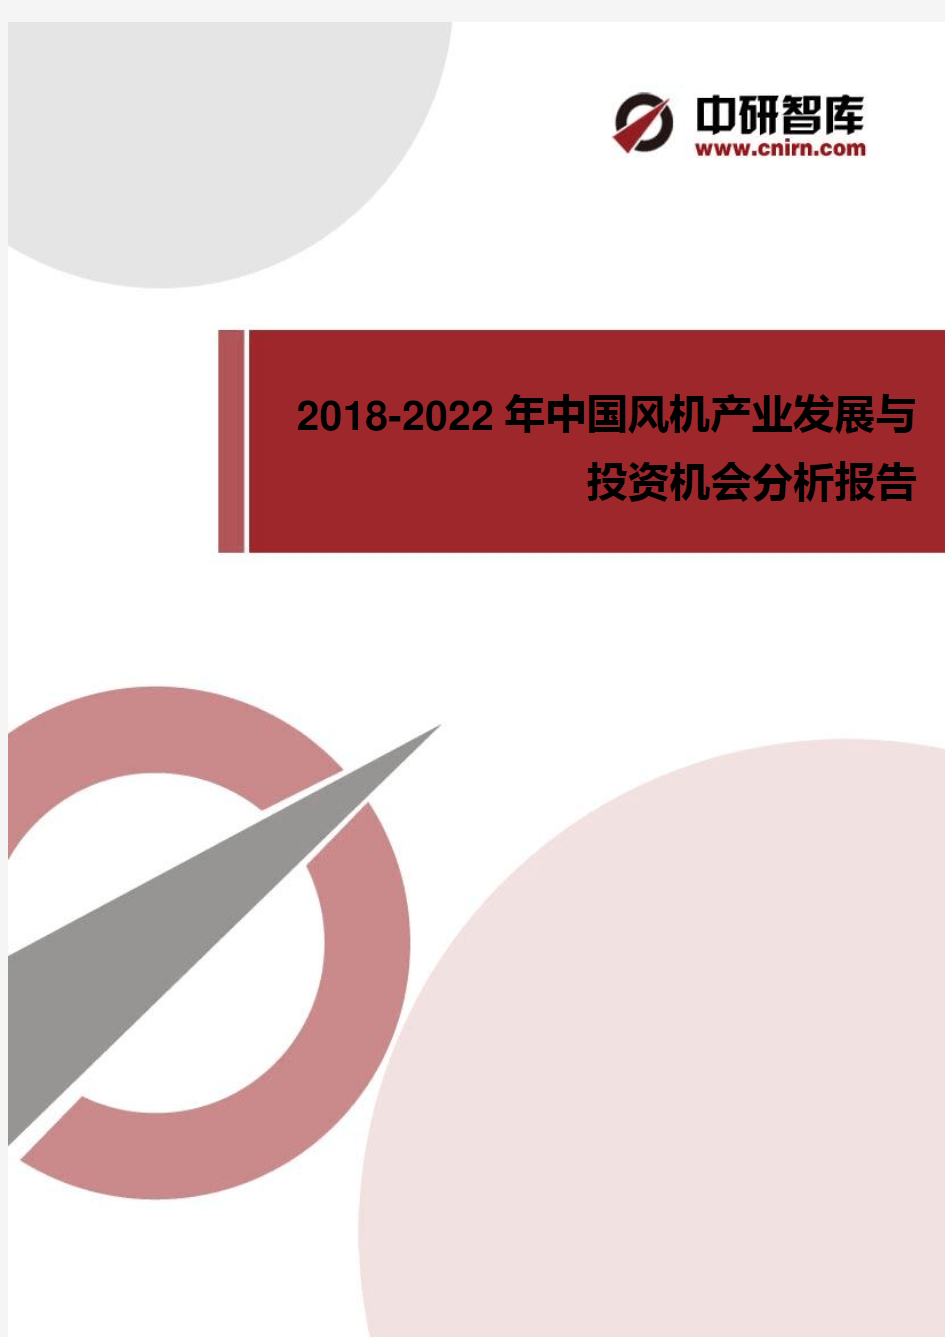 2018-2022年中国风机产业发展与投资机会分析报告